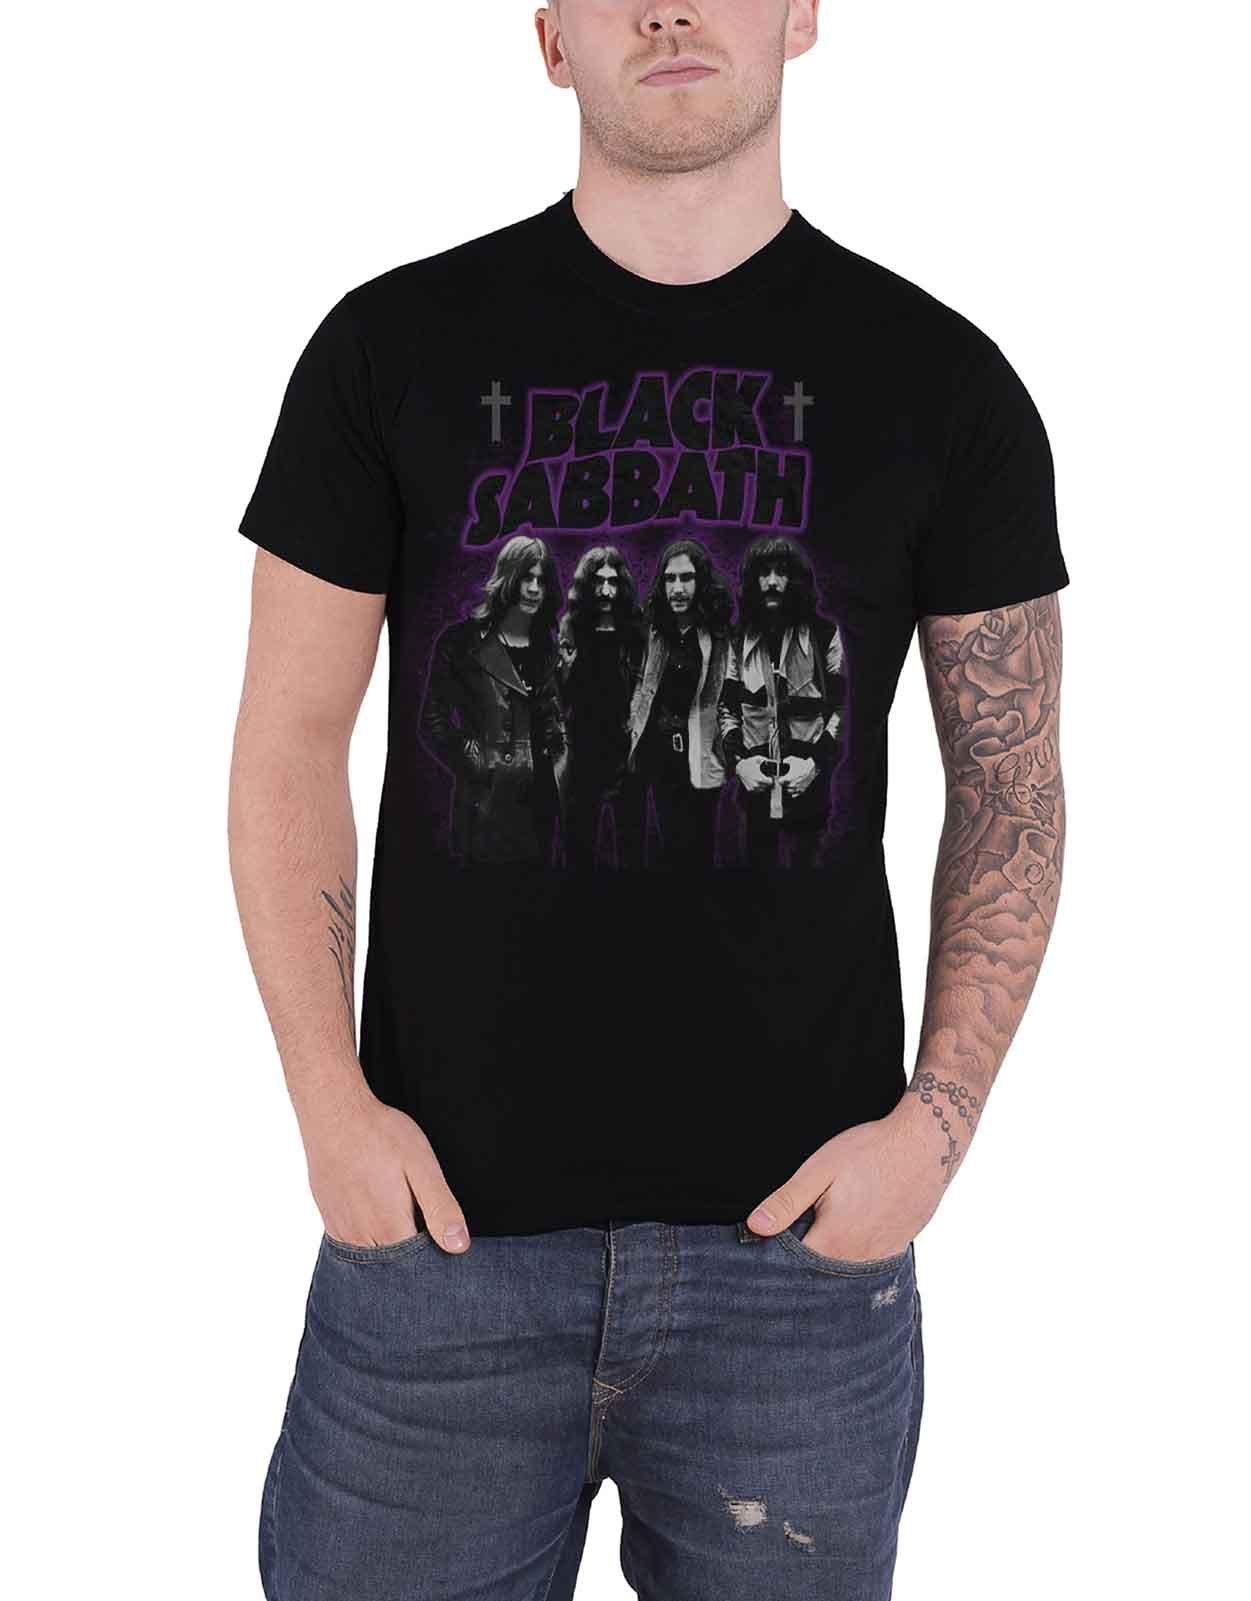 Футболка группы «Мастера реальности» Black Sabbath, черный футболка black sabbath master of reality